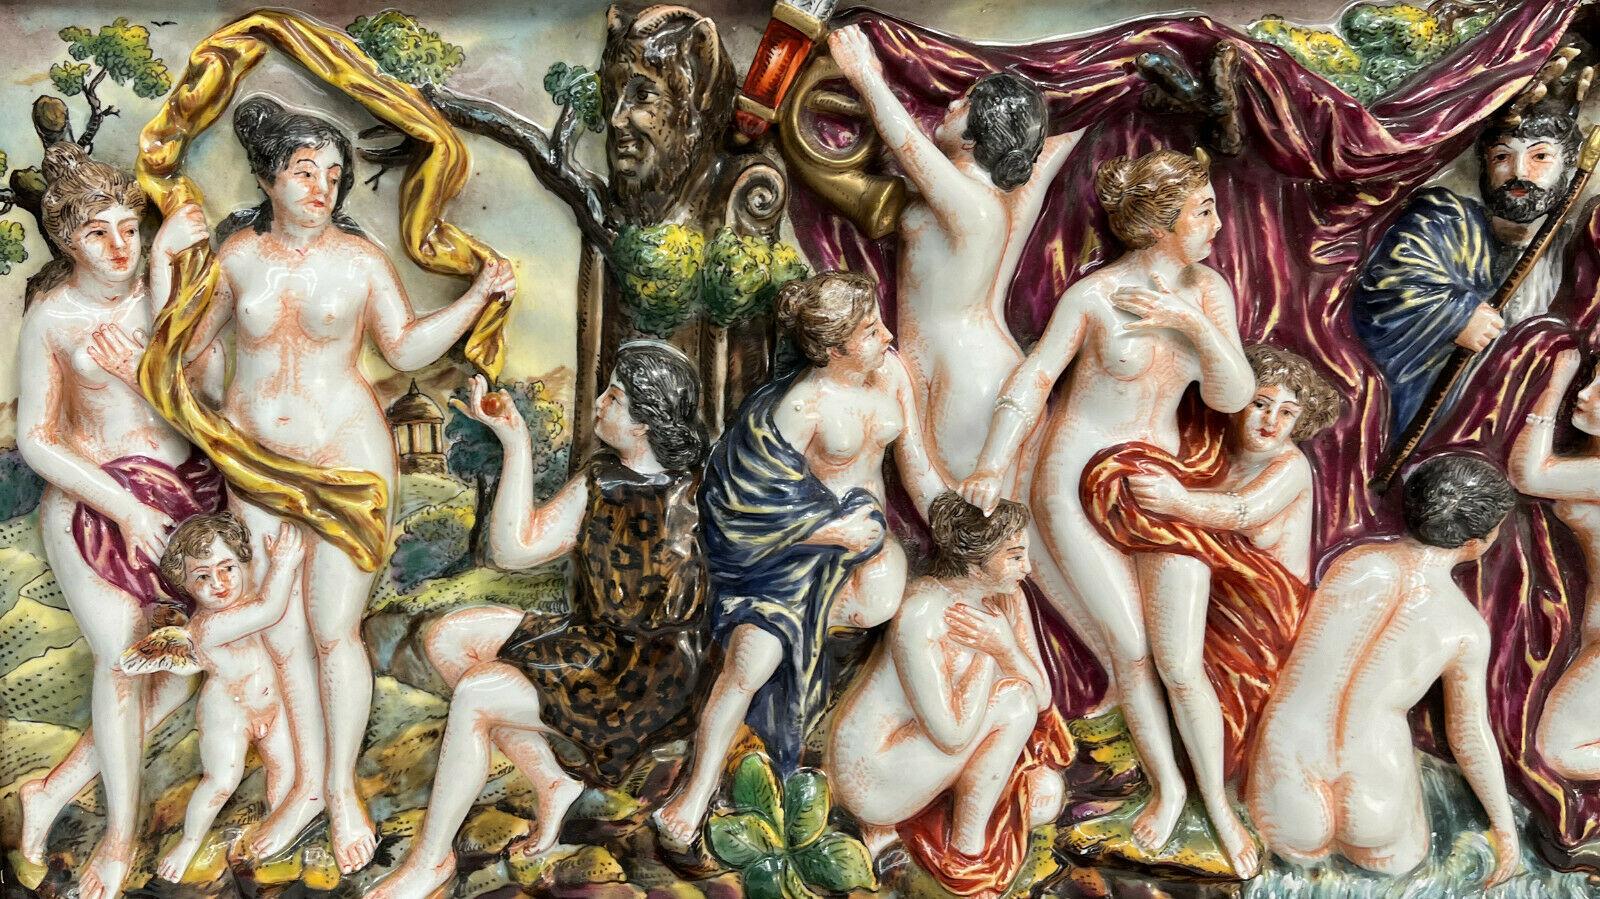 Plaque en haut-relief en porcelaine de Capodimonte d'après Peters Paul Rubens, 1ère moitié du 20ème siècle. D'après le tableau de Diane et ses nymphes surprises par des satyres du peintre baroque flamand du XVIIe siècle, Peter Paul Rubens. Non